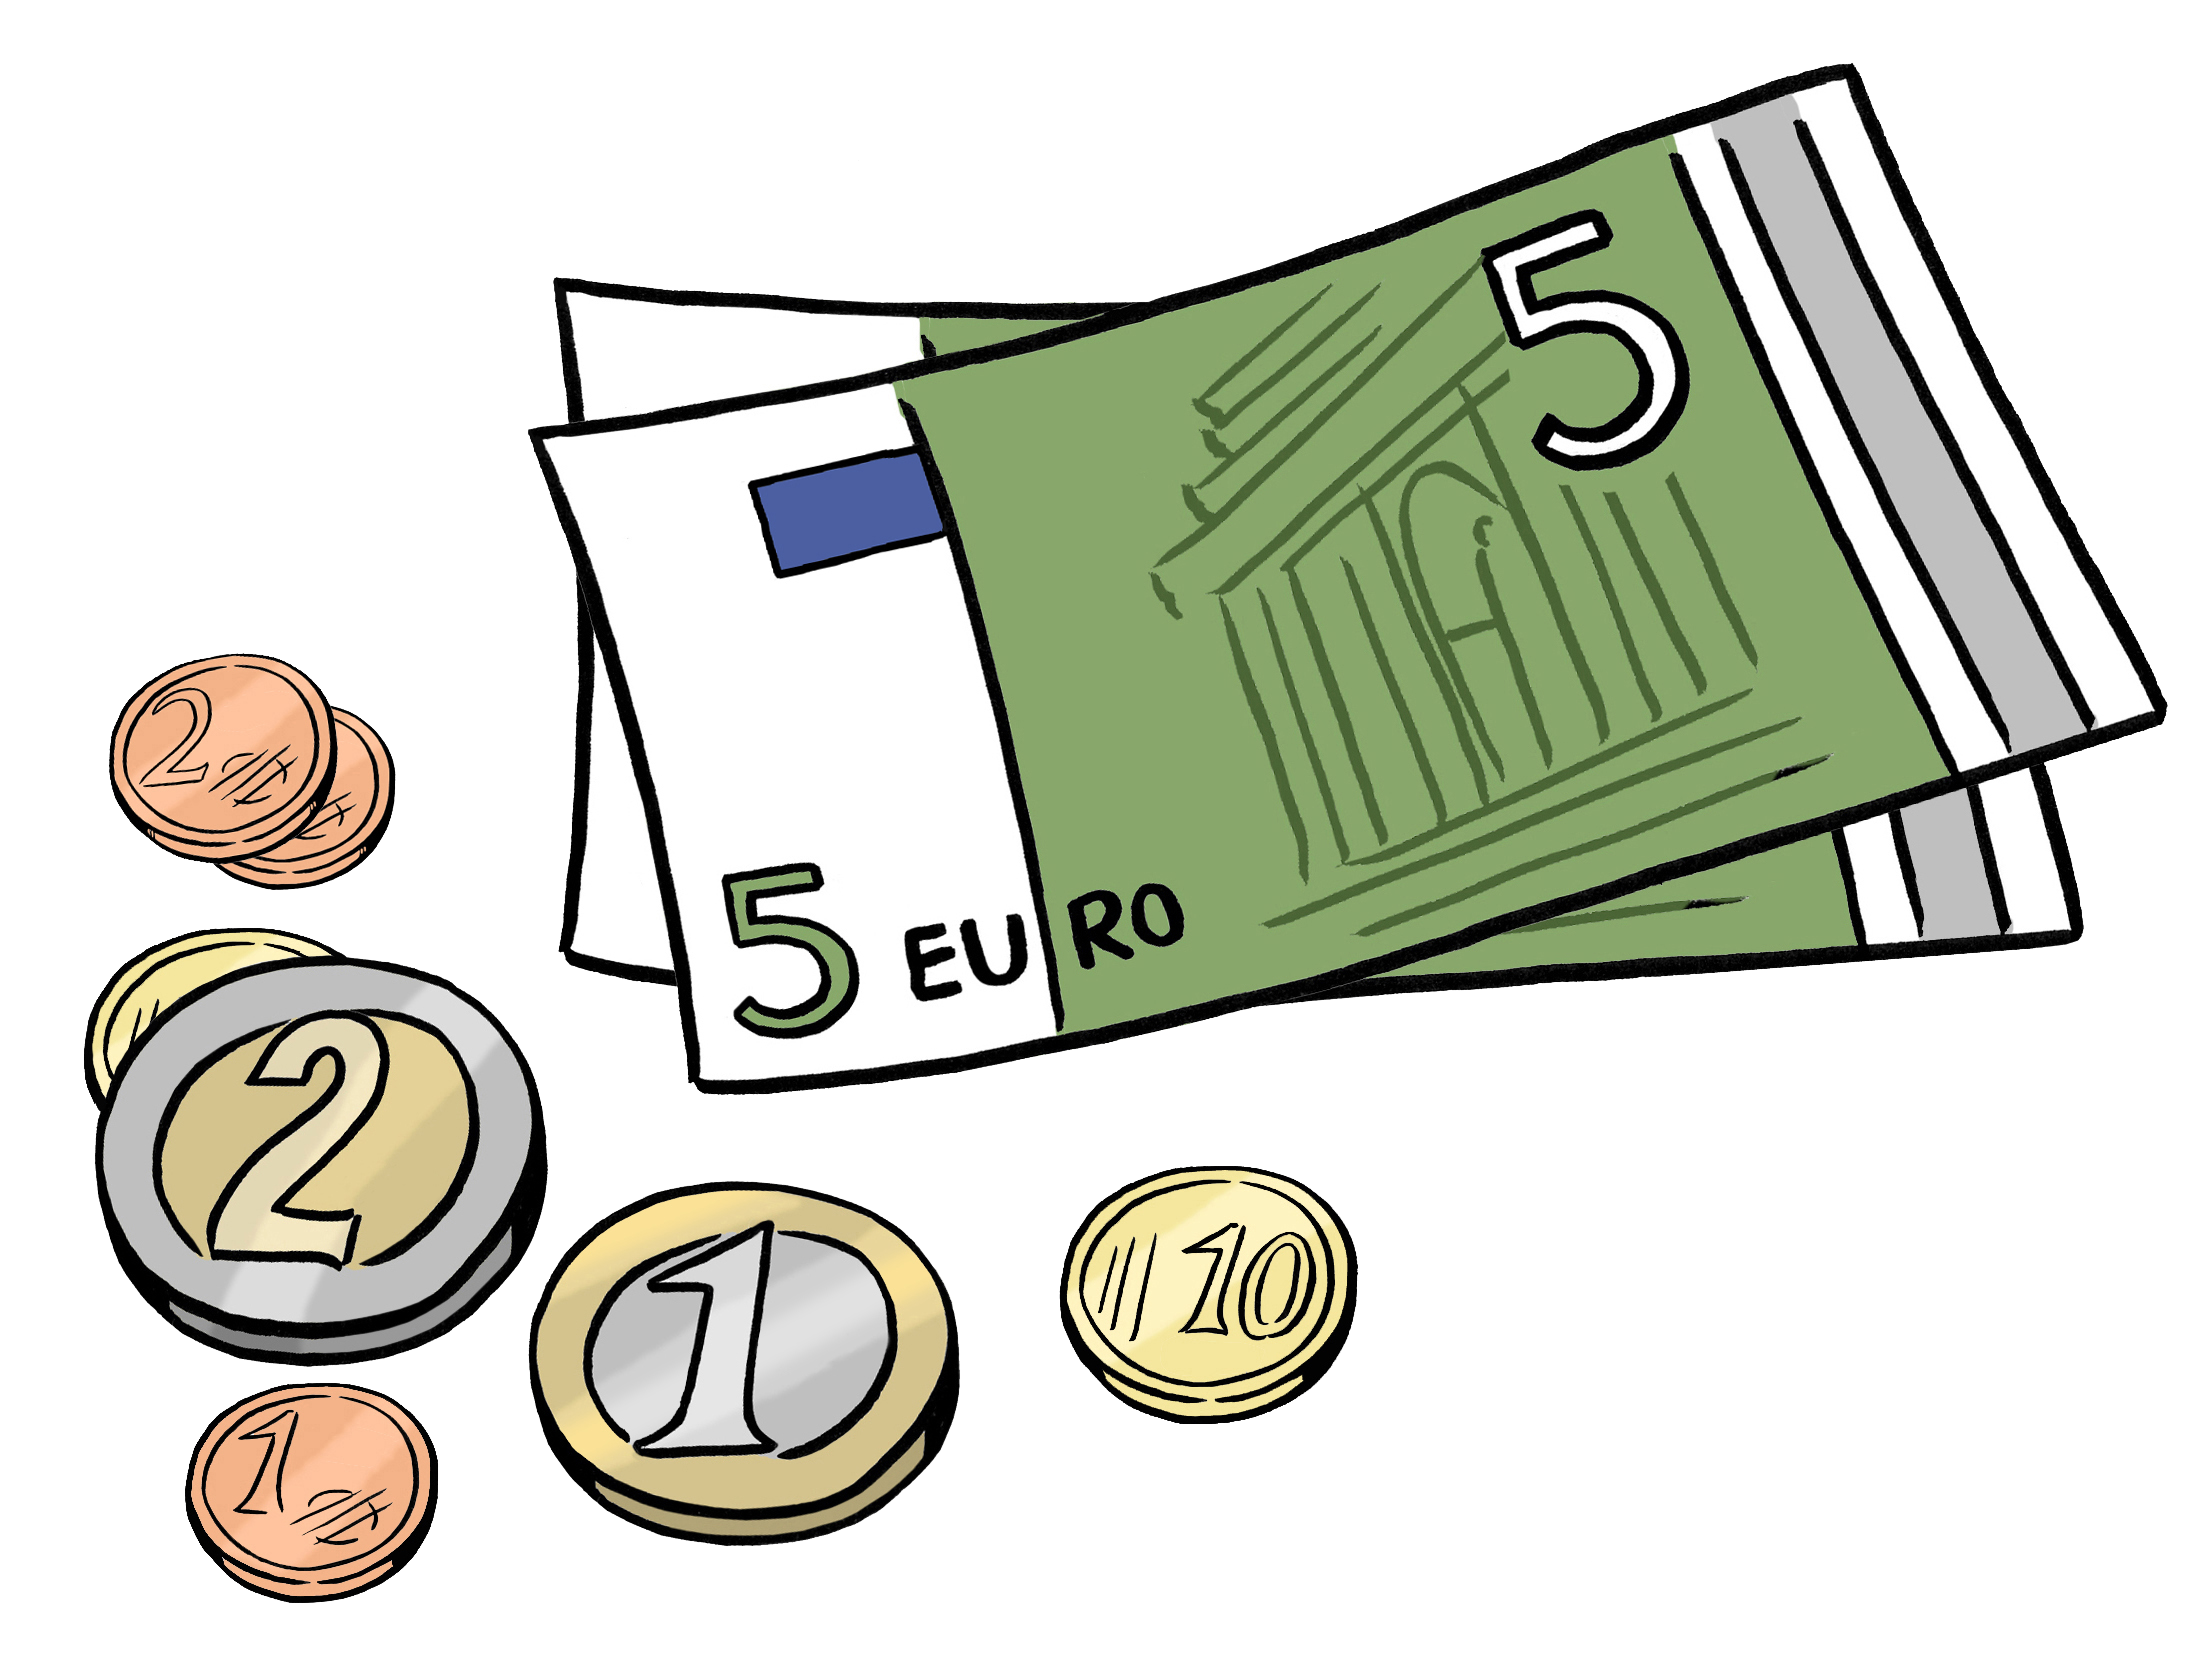 Leichte Sprache Bild: Zwei fünf-Euro Geldscheine und ein paar Geldmünzen